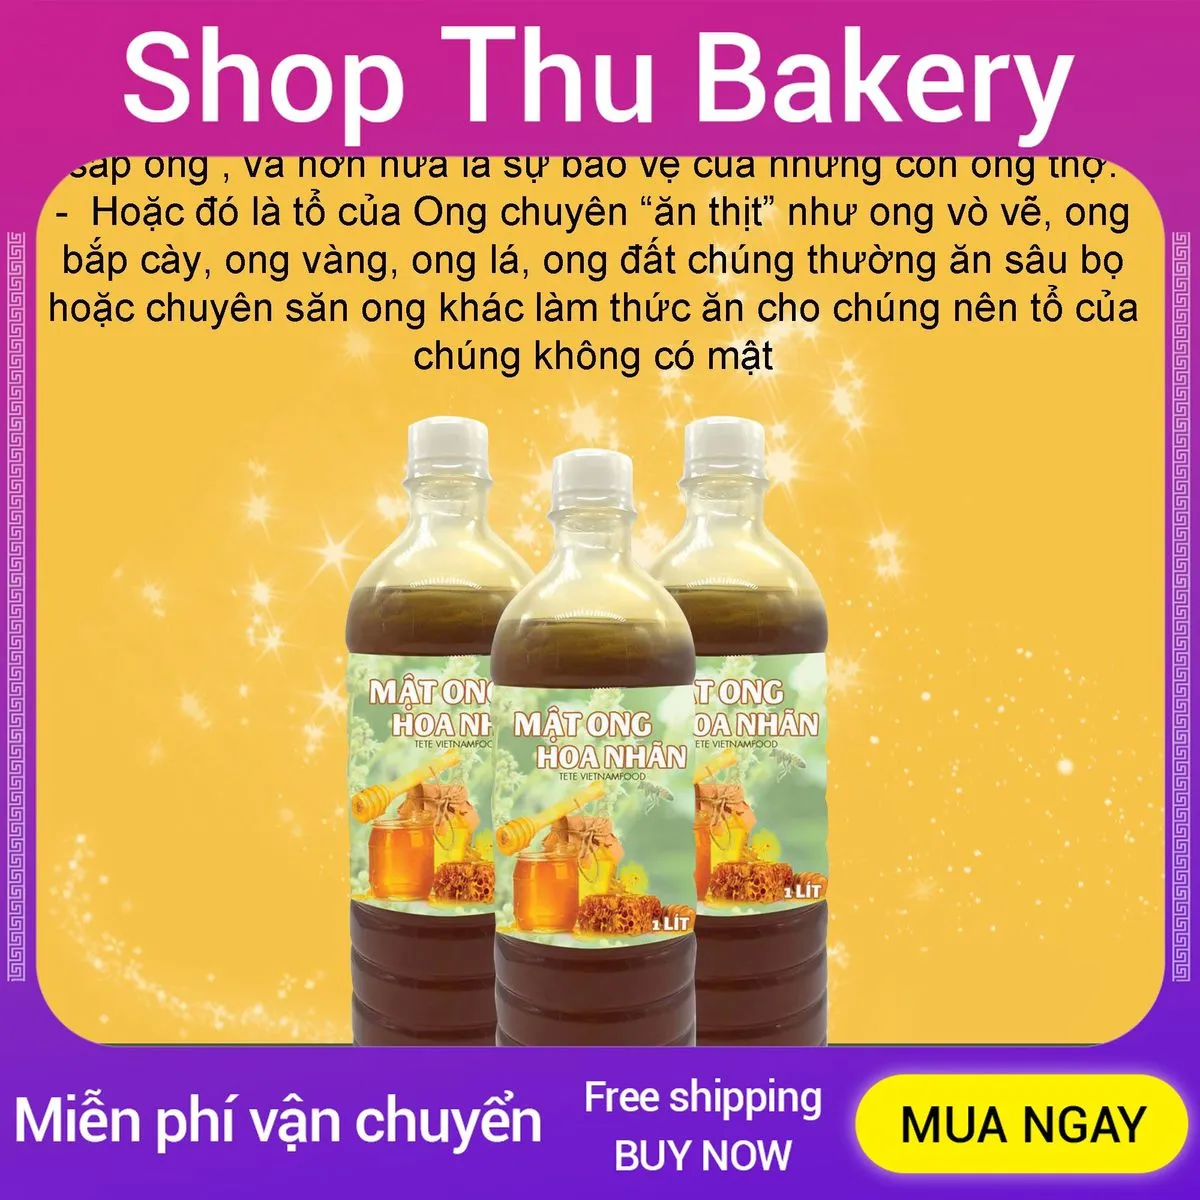 Mật Ong TETE: Mật ong TETE là một trong những thương hiệu mật ong uy tín nhất hiện nay tại Việt Nam. Với chất lượng và hương vị đẳng cấp, sản phẩm này chắc chắn sẽ làm hài lòng các tín đồ yêu thích mật ong. Hãy xem hình ảnh về mật ong TETE để tận hưởng vẻ đẹp và hương vị đặc trưng của sản phẩm nhé! (English Translation: TETE honey is one of the most reputable honey brands in Vietnam today. With quality and superior taste, this product will definitely satisfy honey lovers. Let\'s check out pictures of TETE honey to enjoy the beauty and unique taste of the product!)